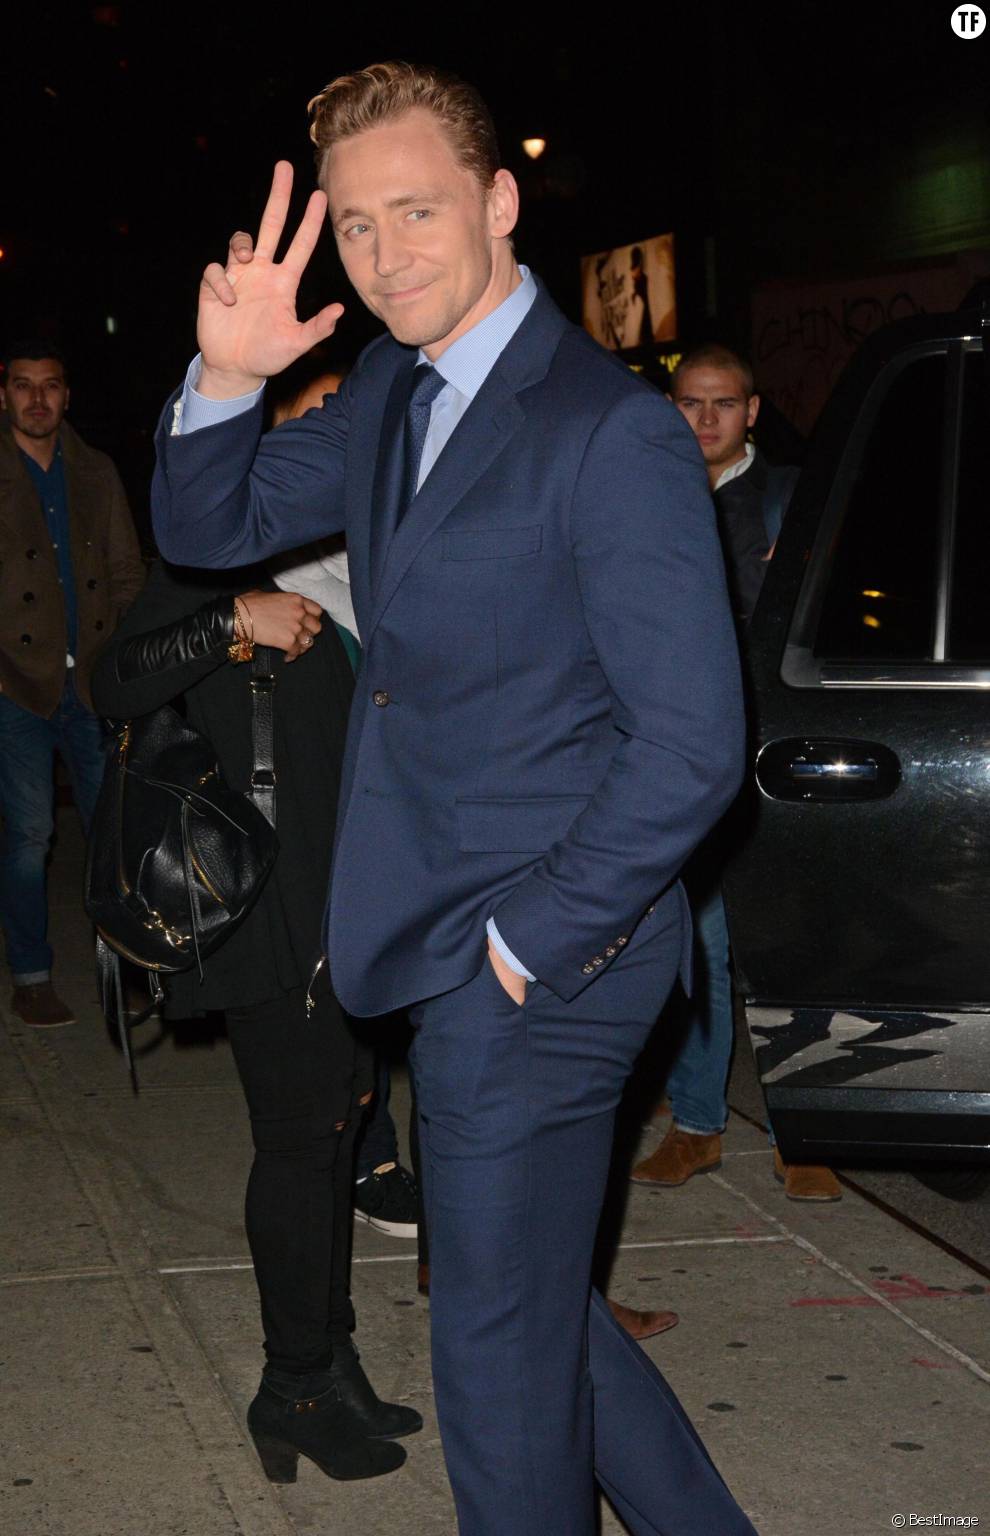  Tom Hiddleston arrive à l&#039;émission &#039;The Late Show with Stephen Colbert&#039; à New York, le 16 octobre 2015  